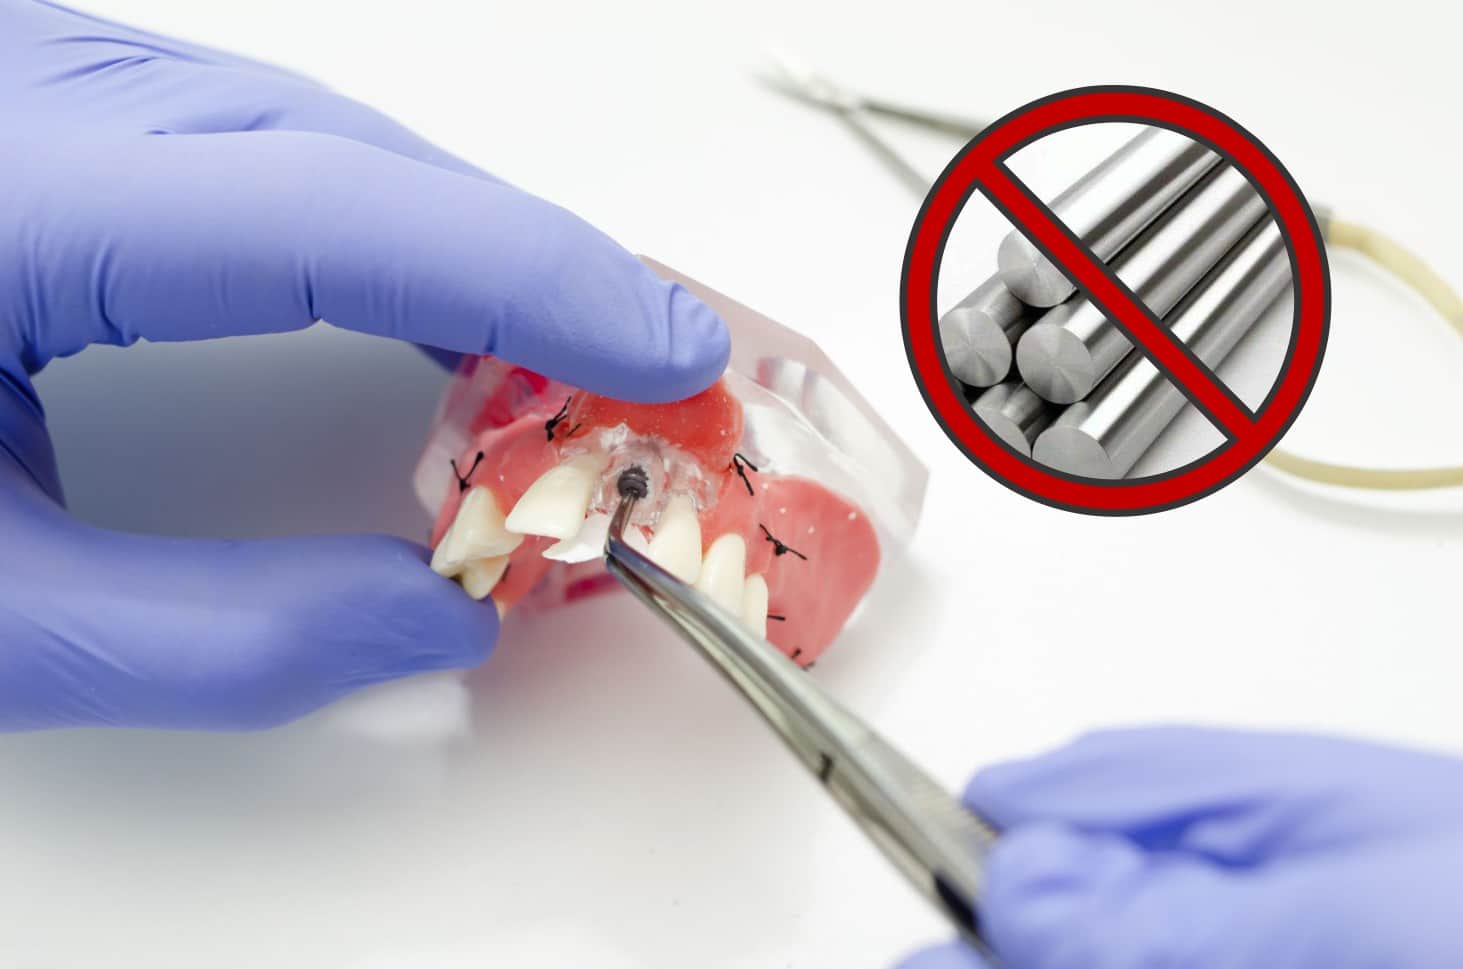 Implante Dental livre de Alumínio